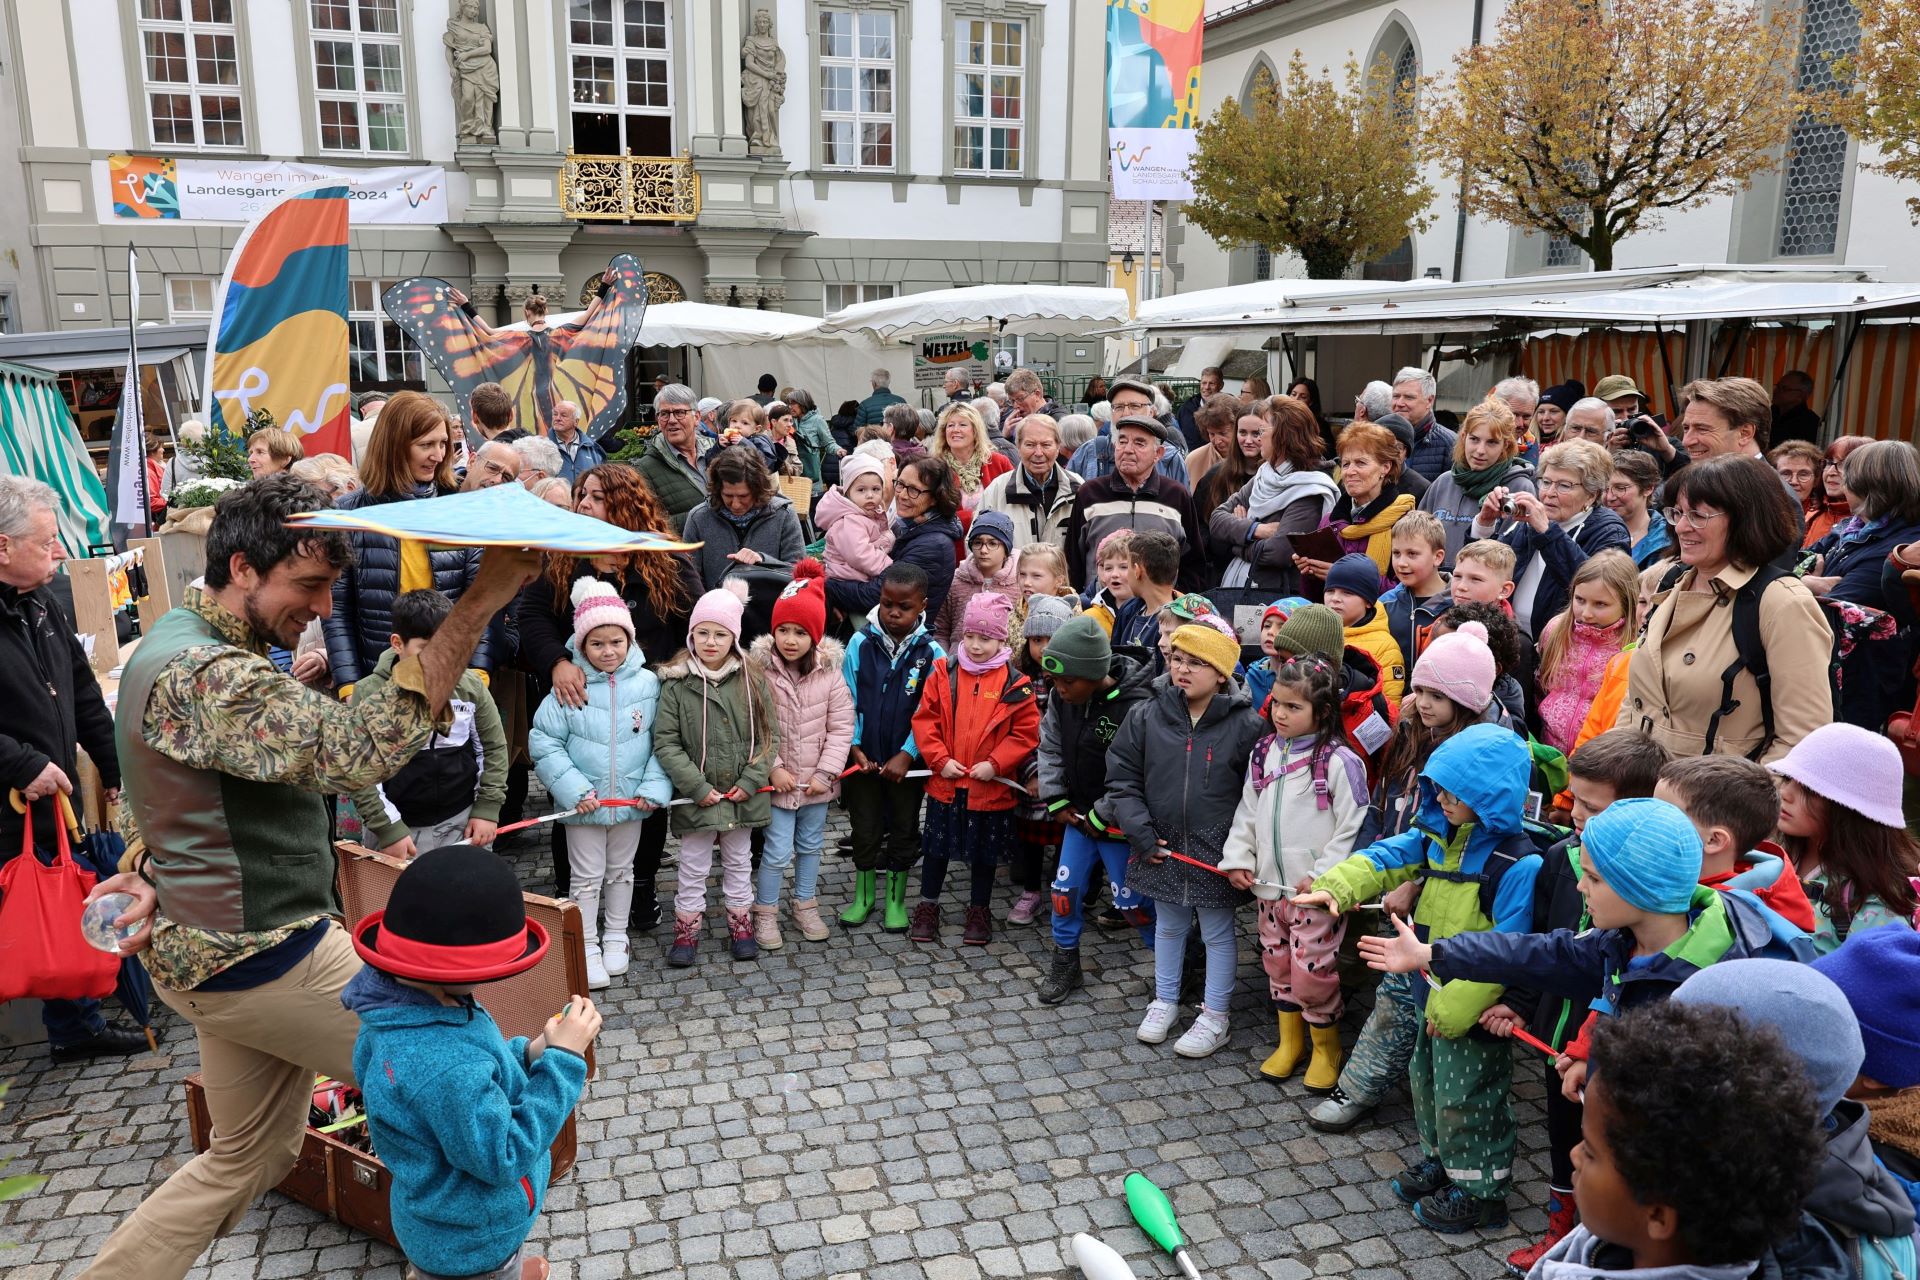 Marktplatz voller Kinder und Jonglage ©Landesgartenschau Wangen/sum